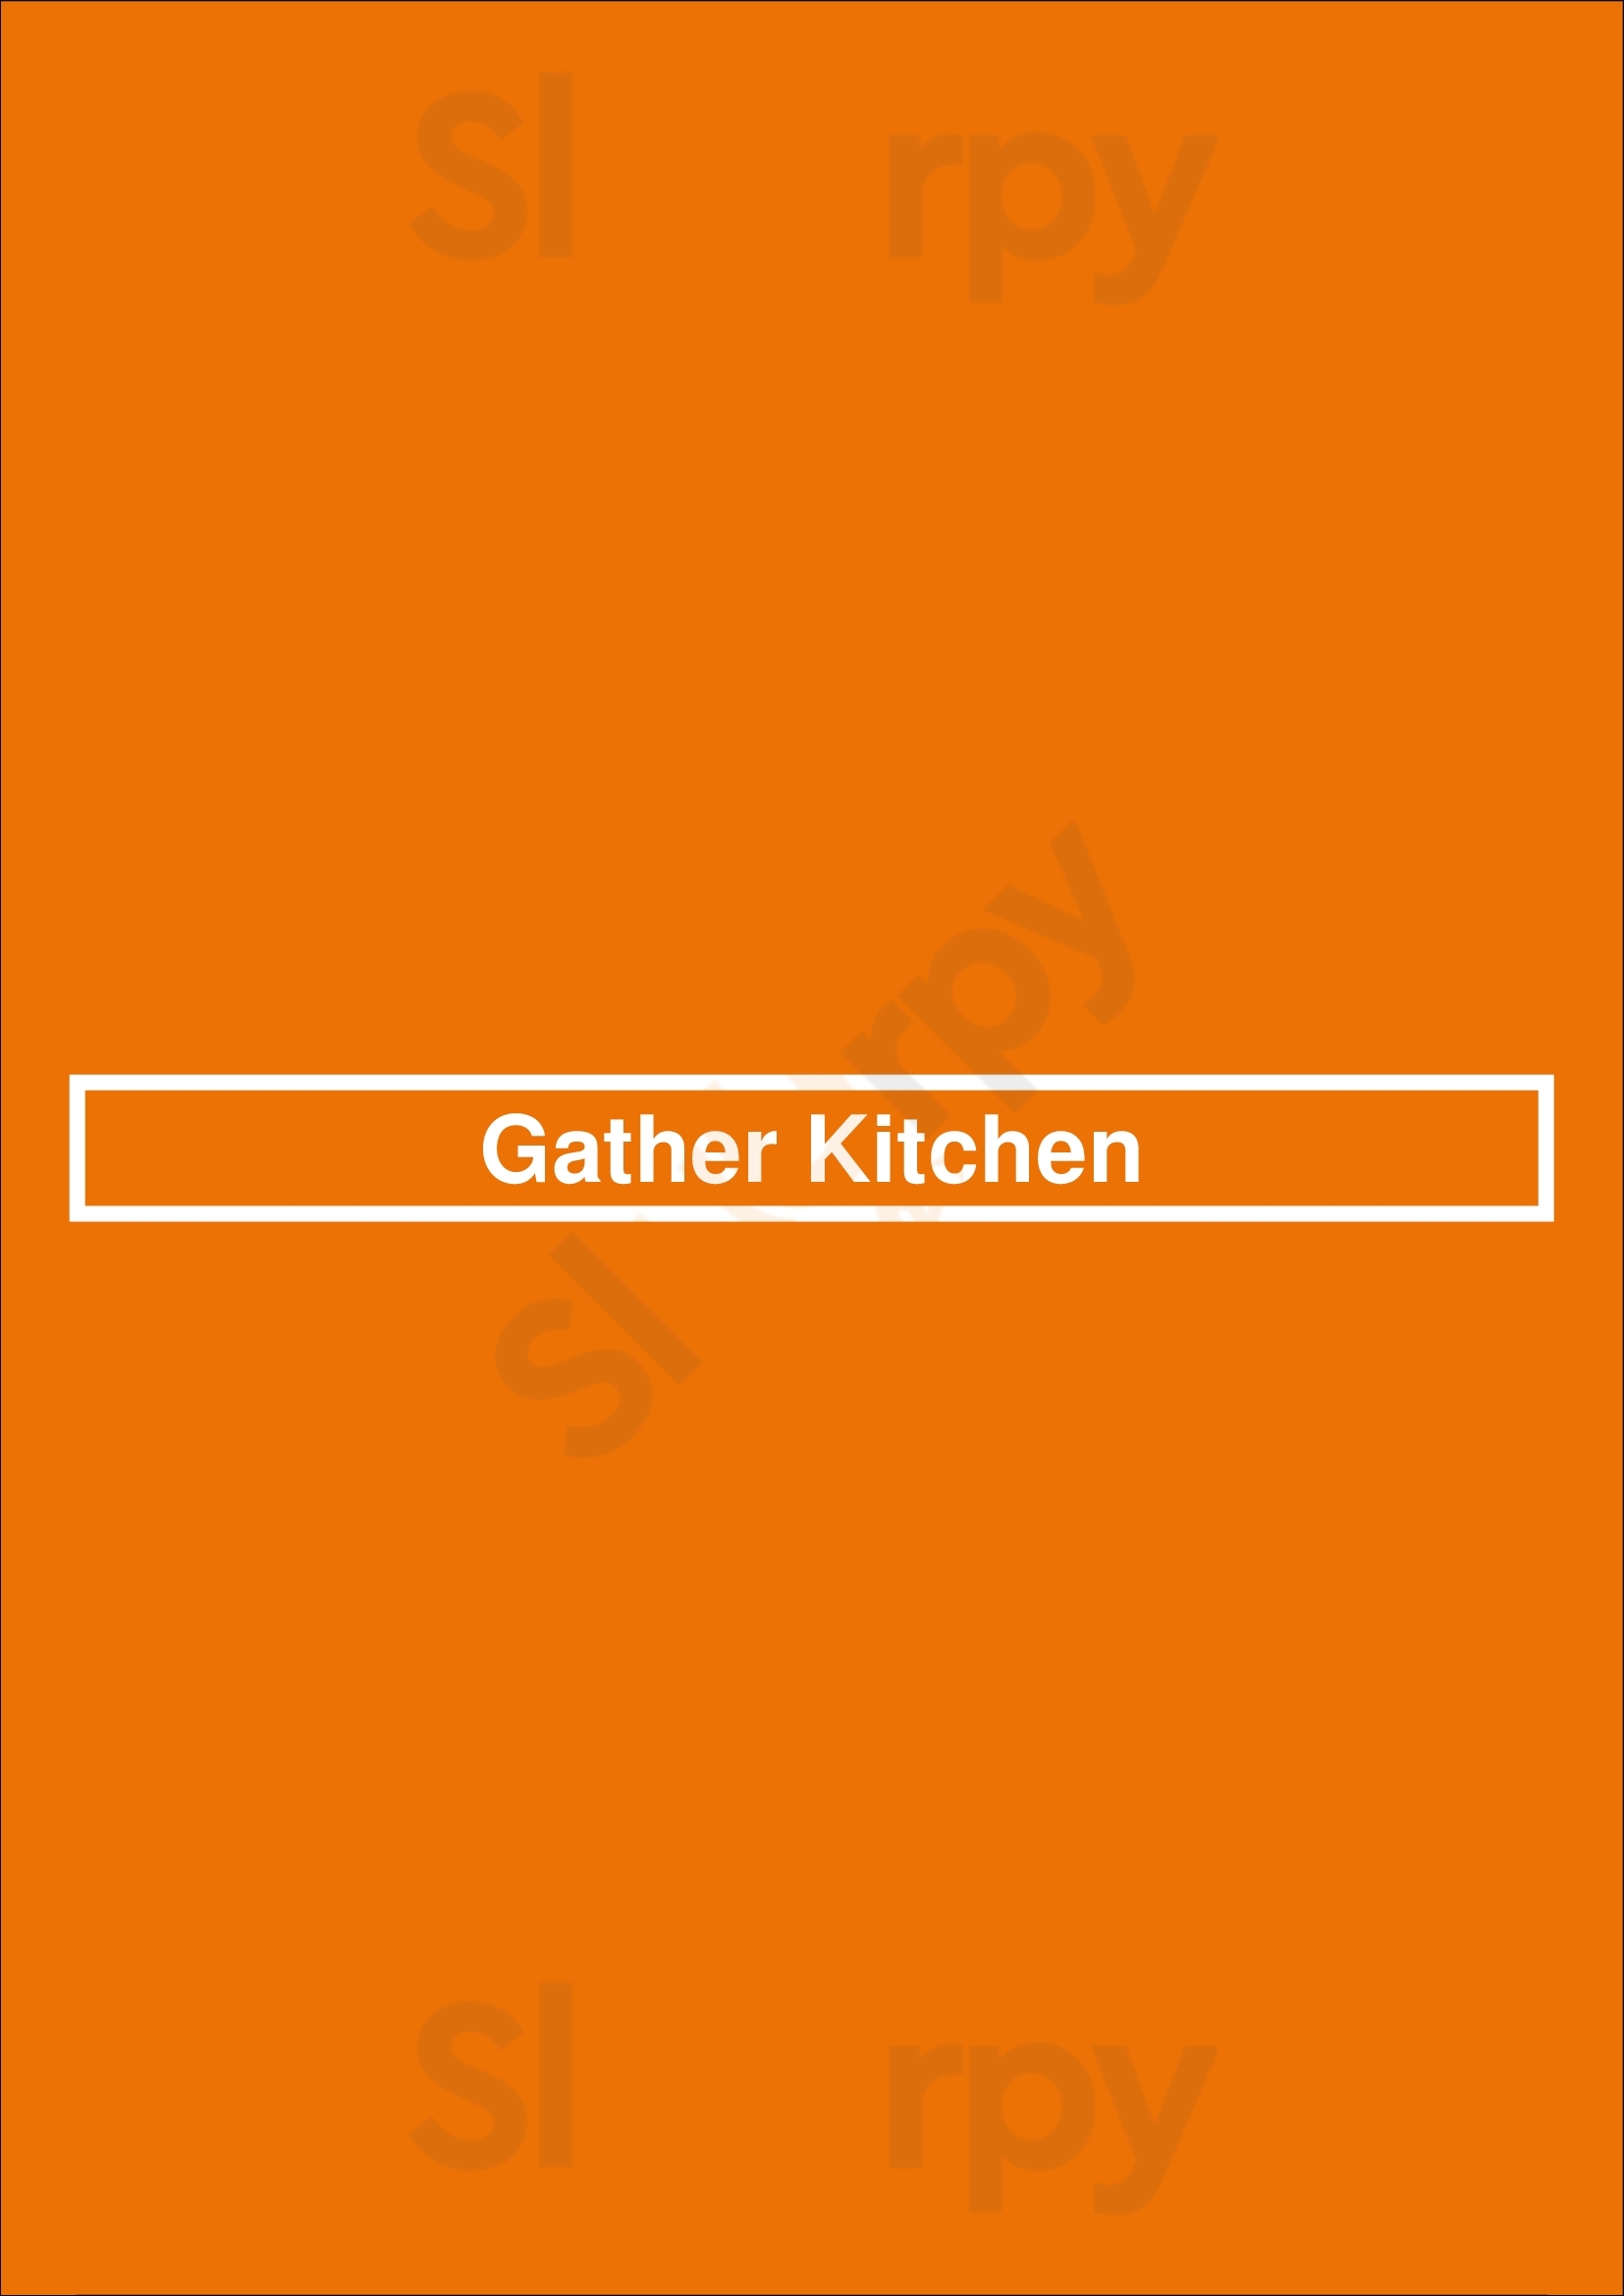 Gather Kitchen Dallas Menu - 1